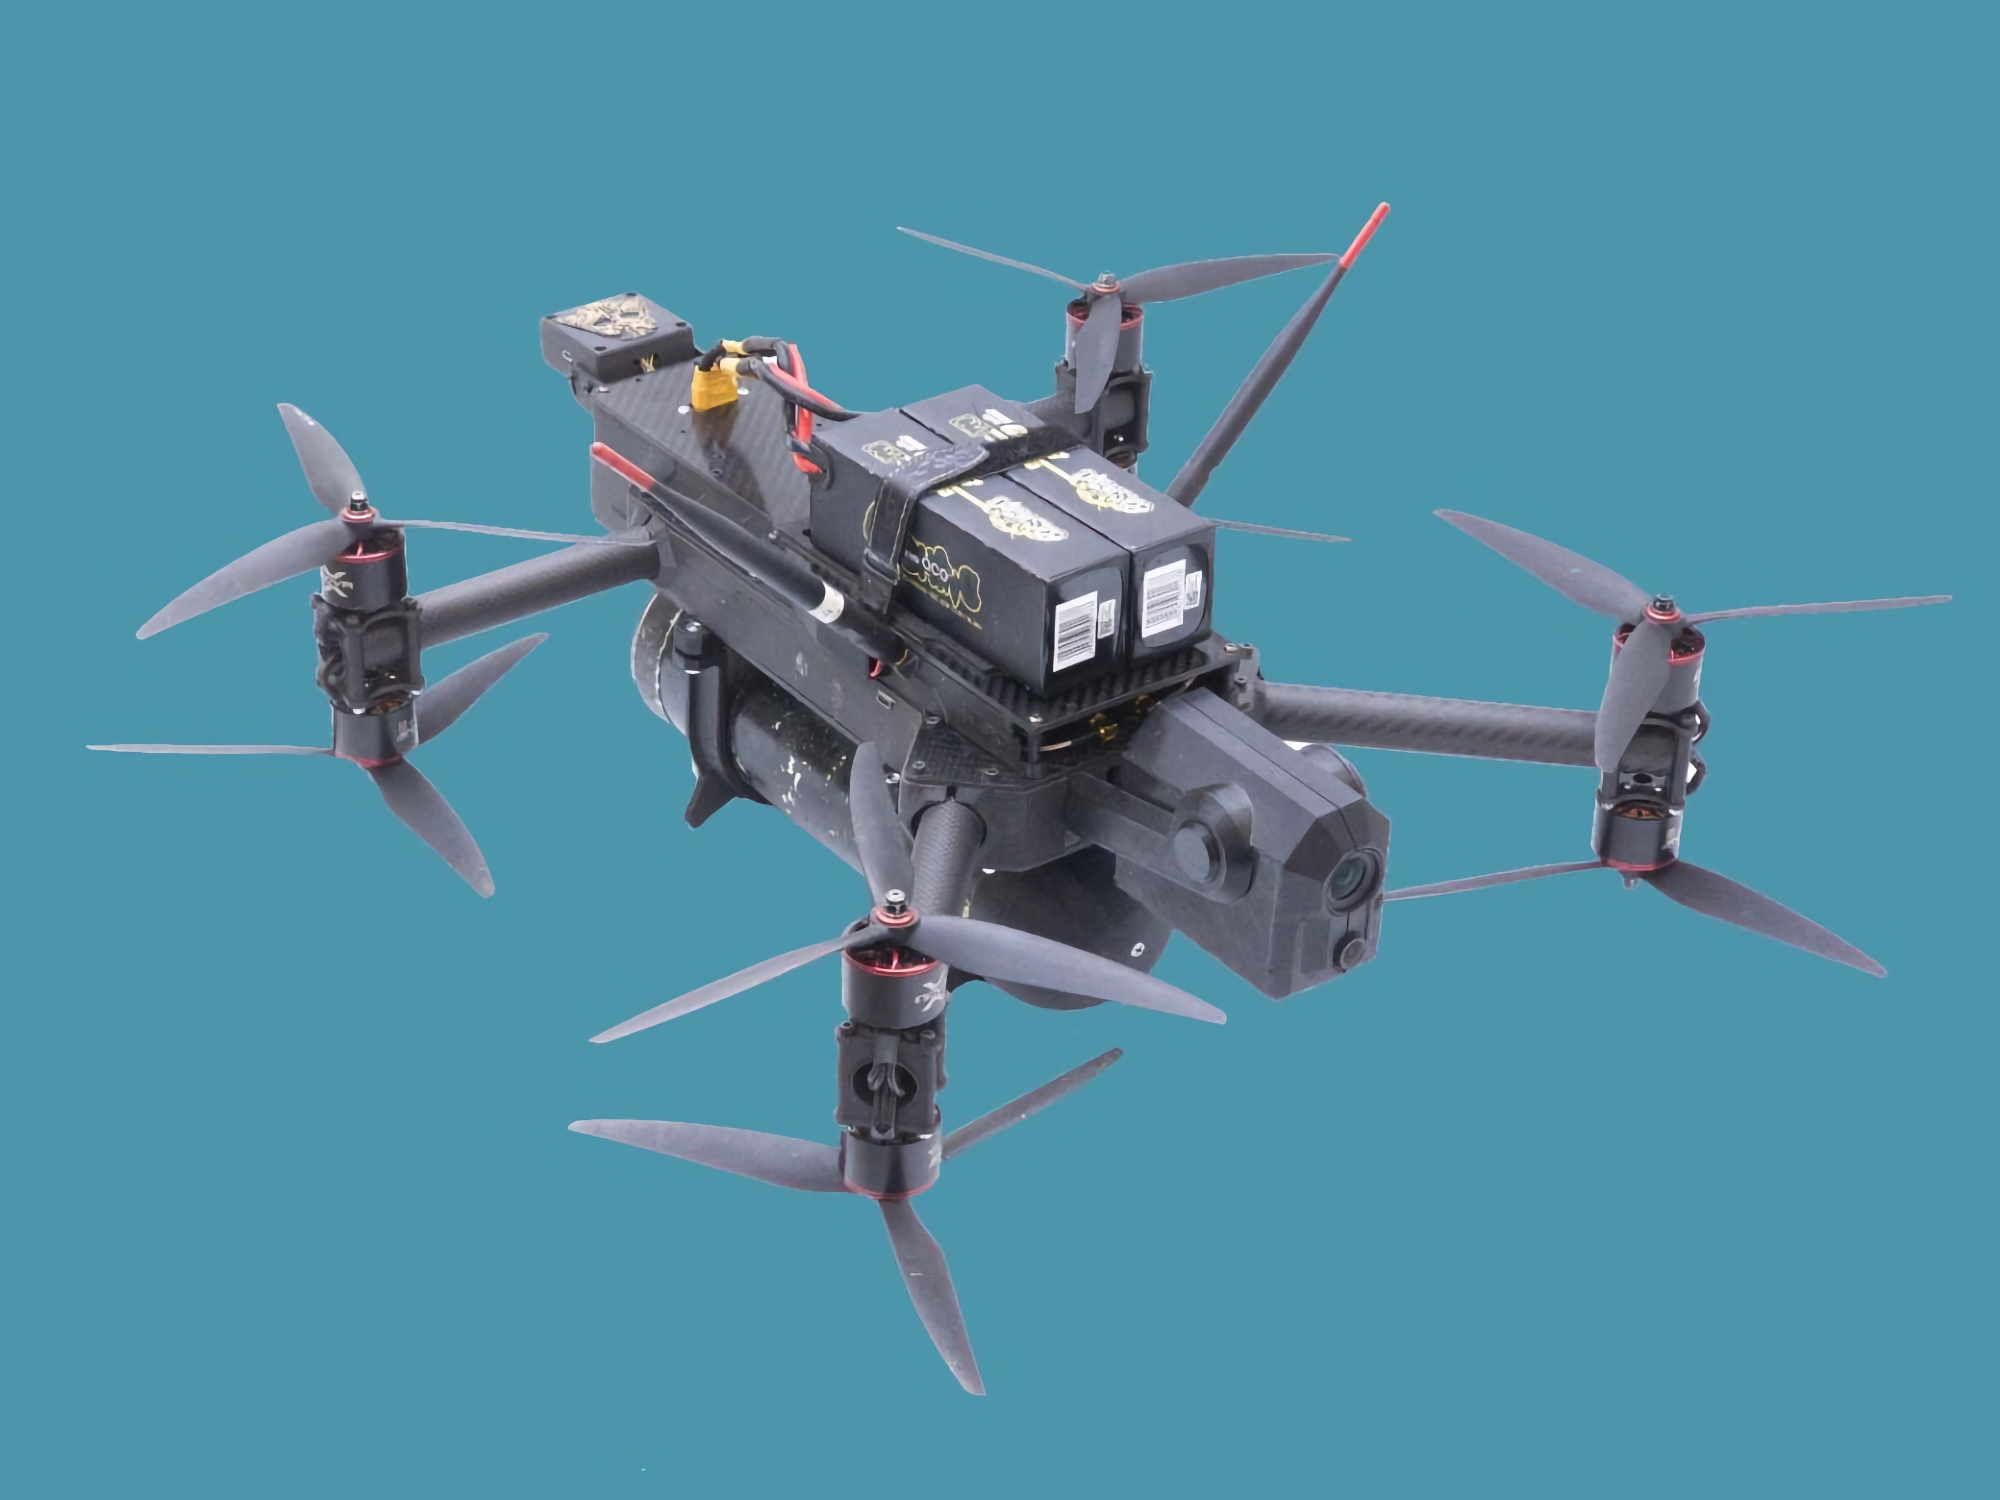 Ukraina stworzyła kompaktowego drona atakującego SkyKnight 2 ze sztuczną inteligencją, który może oprzeć się wojnie elektronicznej i działom przeciwdronowym.